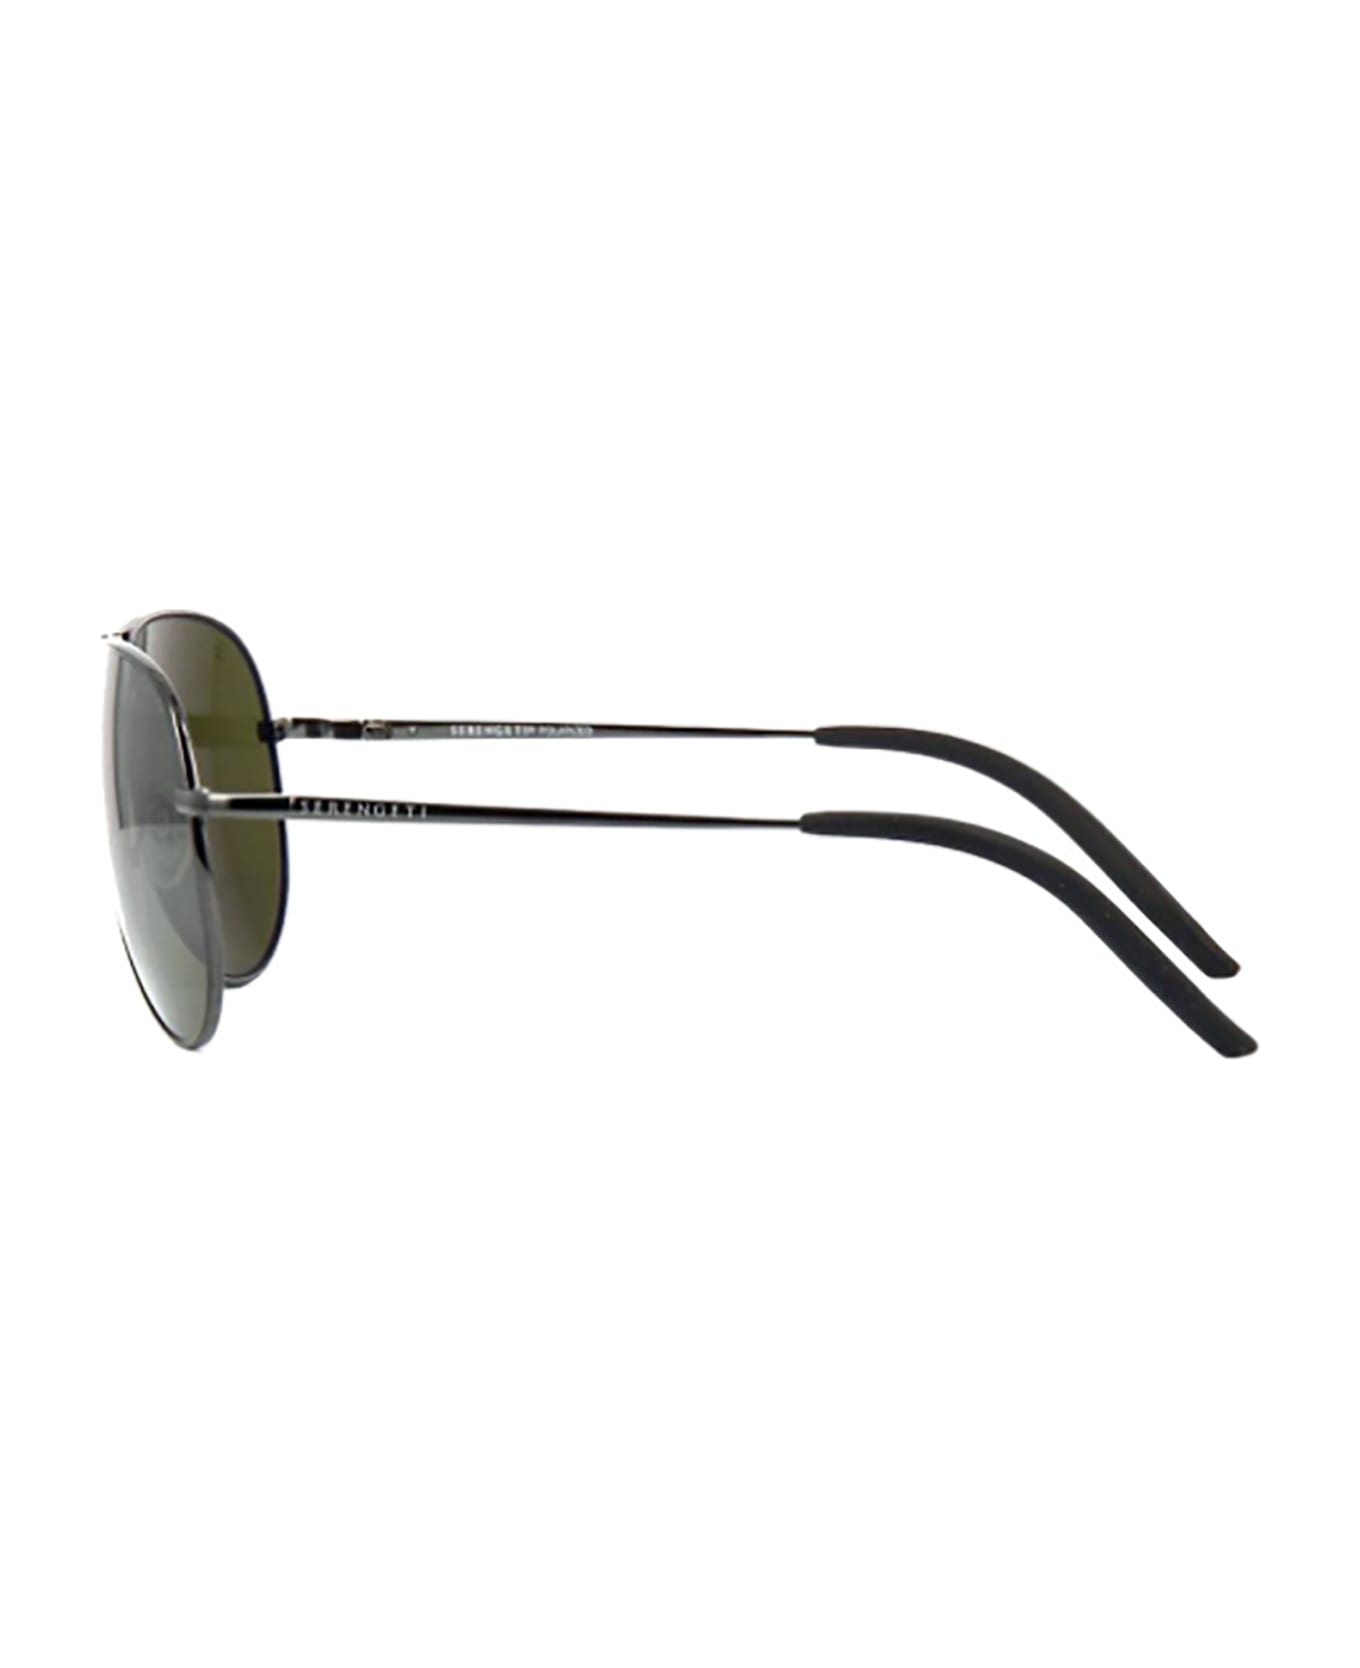 Serengeti Eyewear CARRARA SHINY GUNMETAL Sunglasses - Gun Metal サングラス